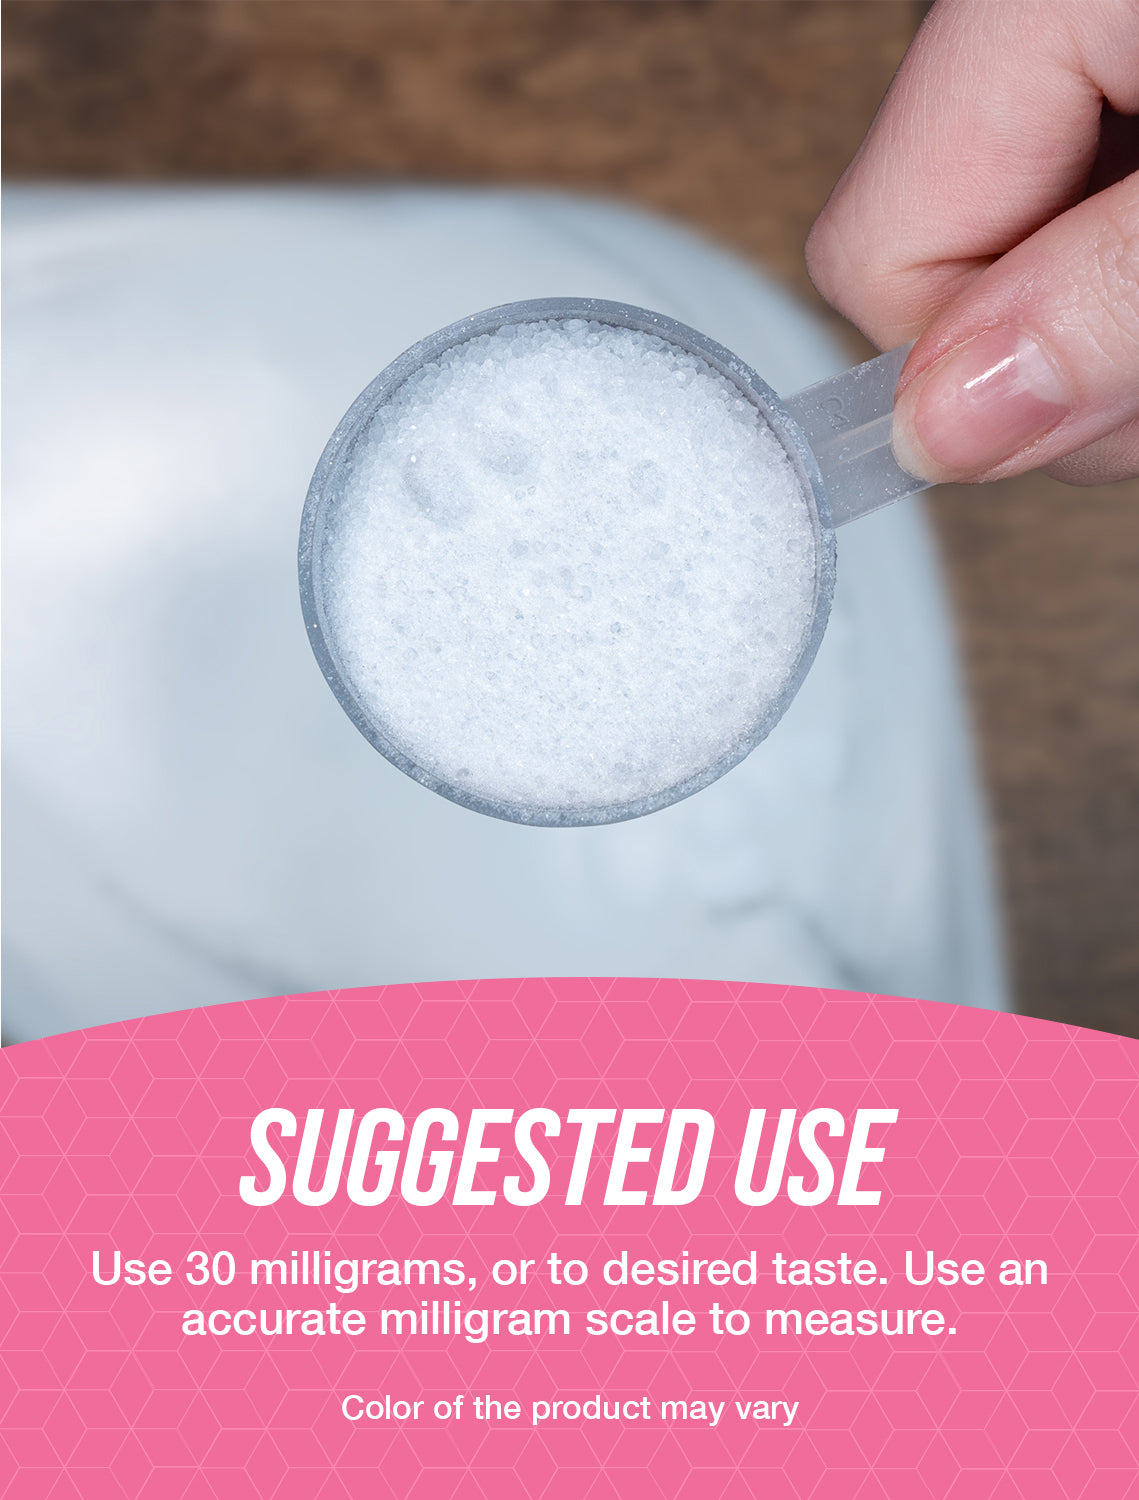 Sucralose powder suggested use image